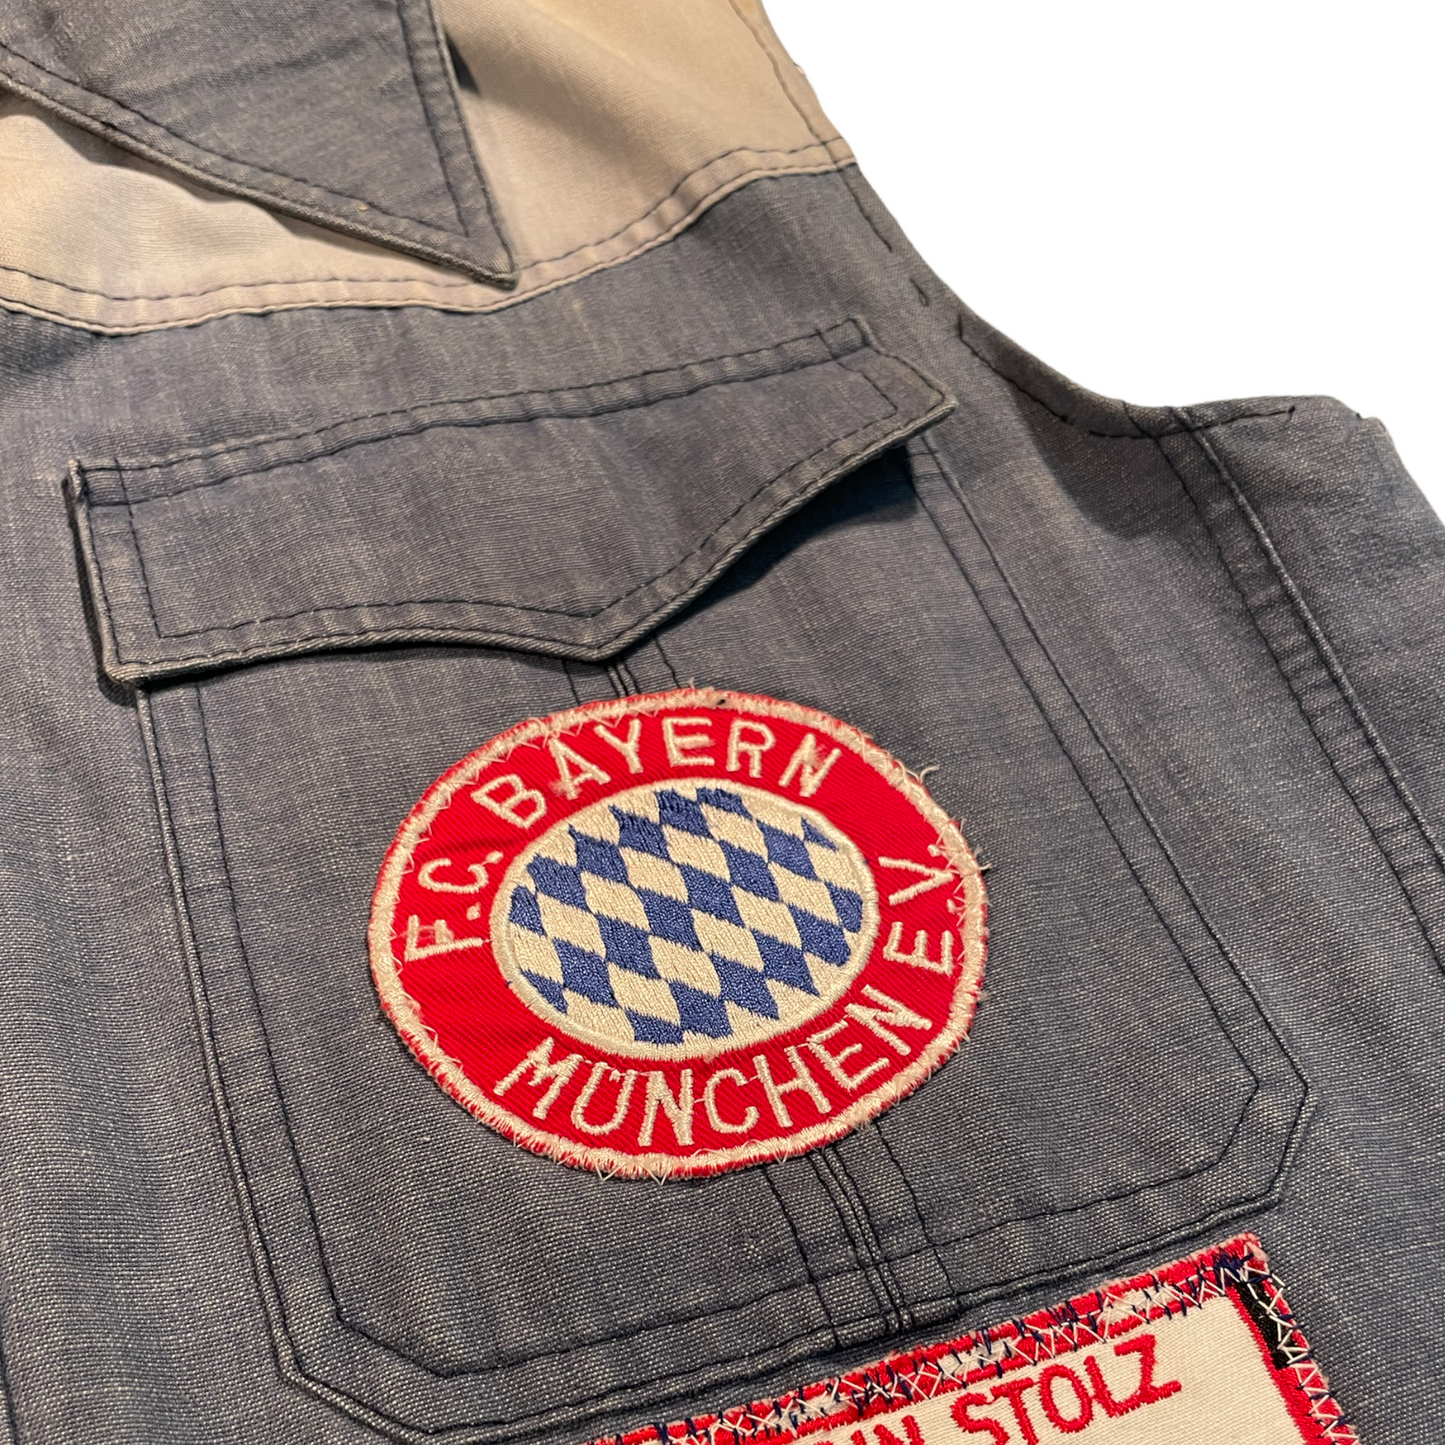 Bayern München Denim Jacket